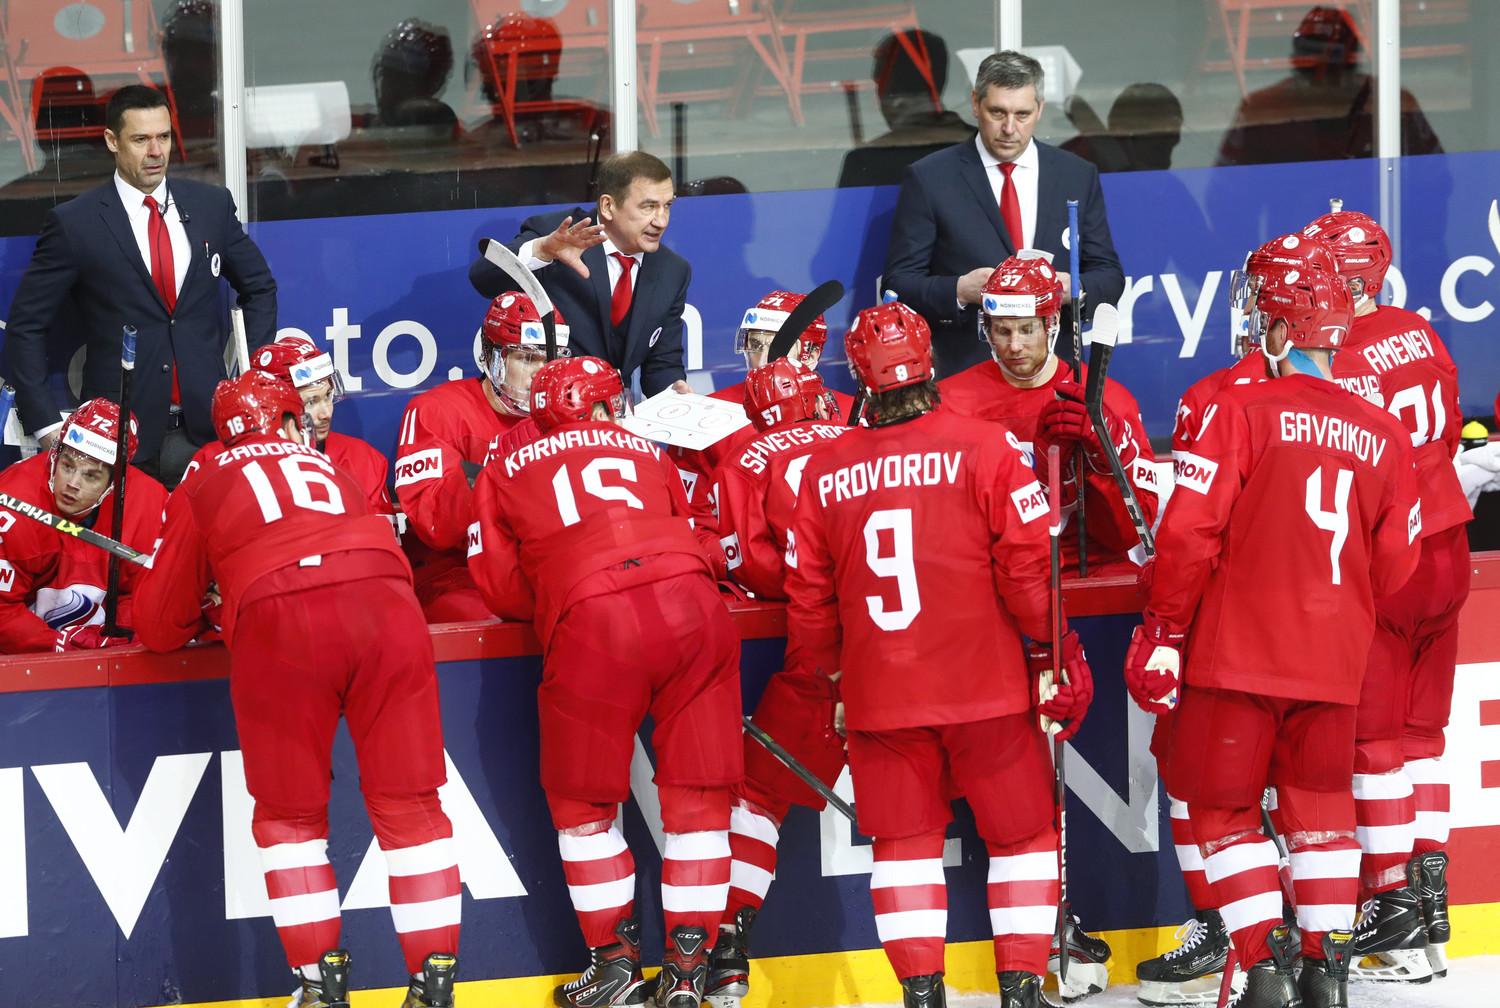 Комментатор Андронов назвал игру сборной России «фантастическим позорищем»